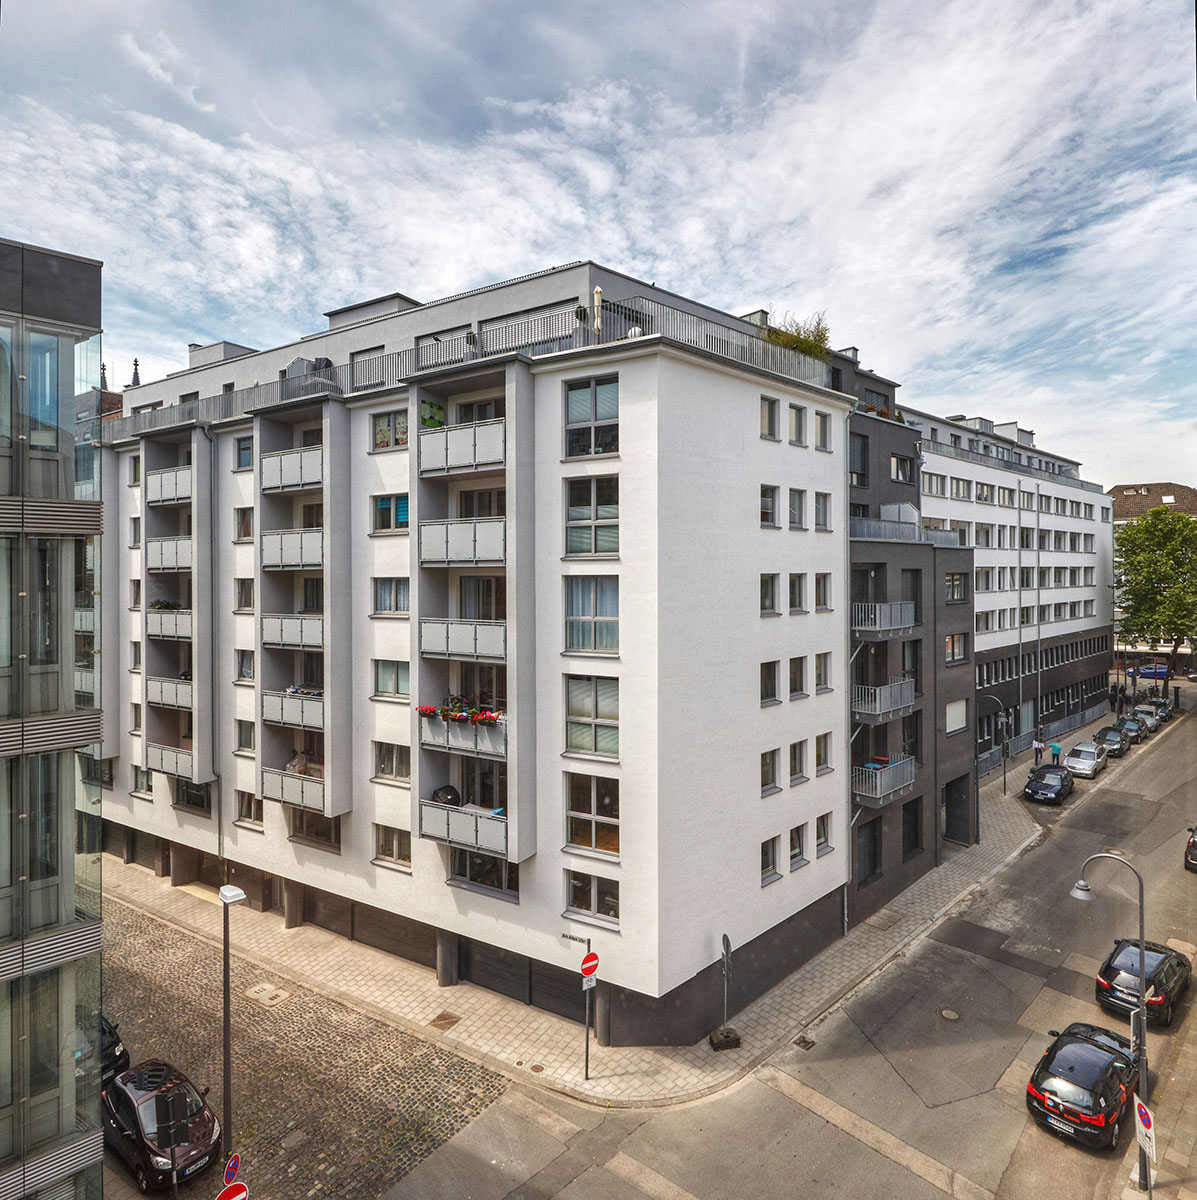 Referenz WvM Immobilien in der Kölner Innenstadt
				